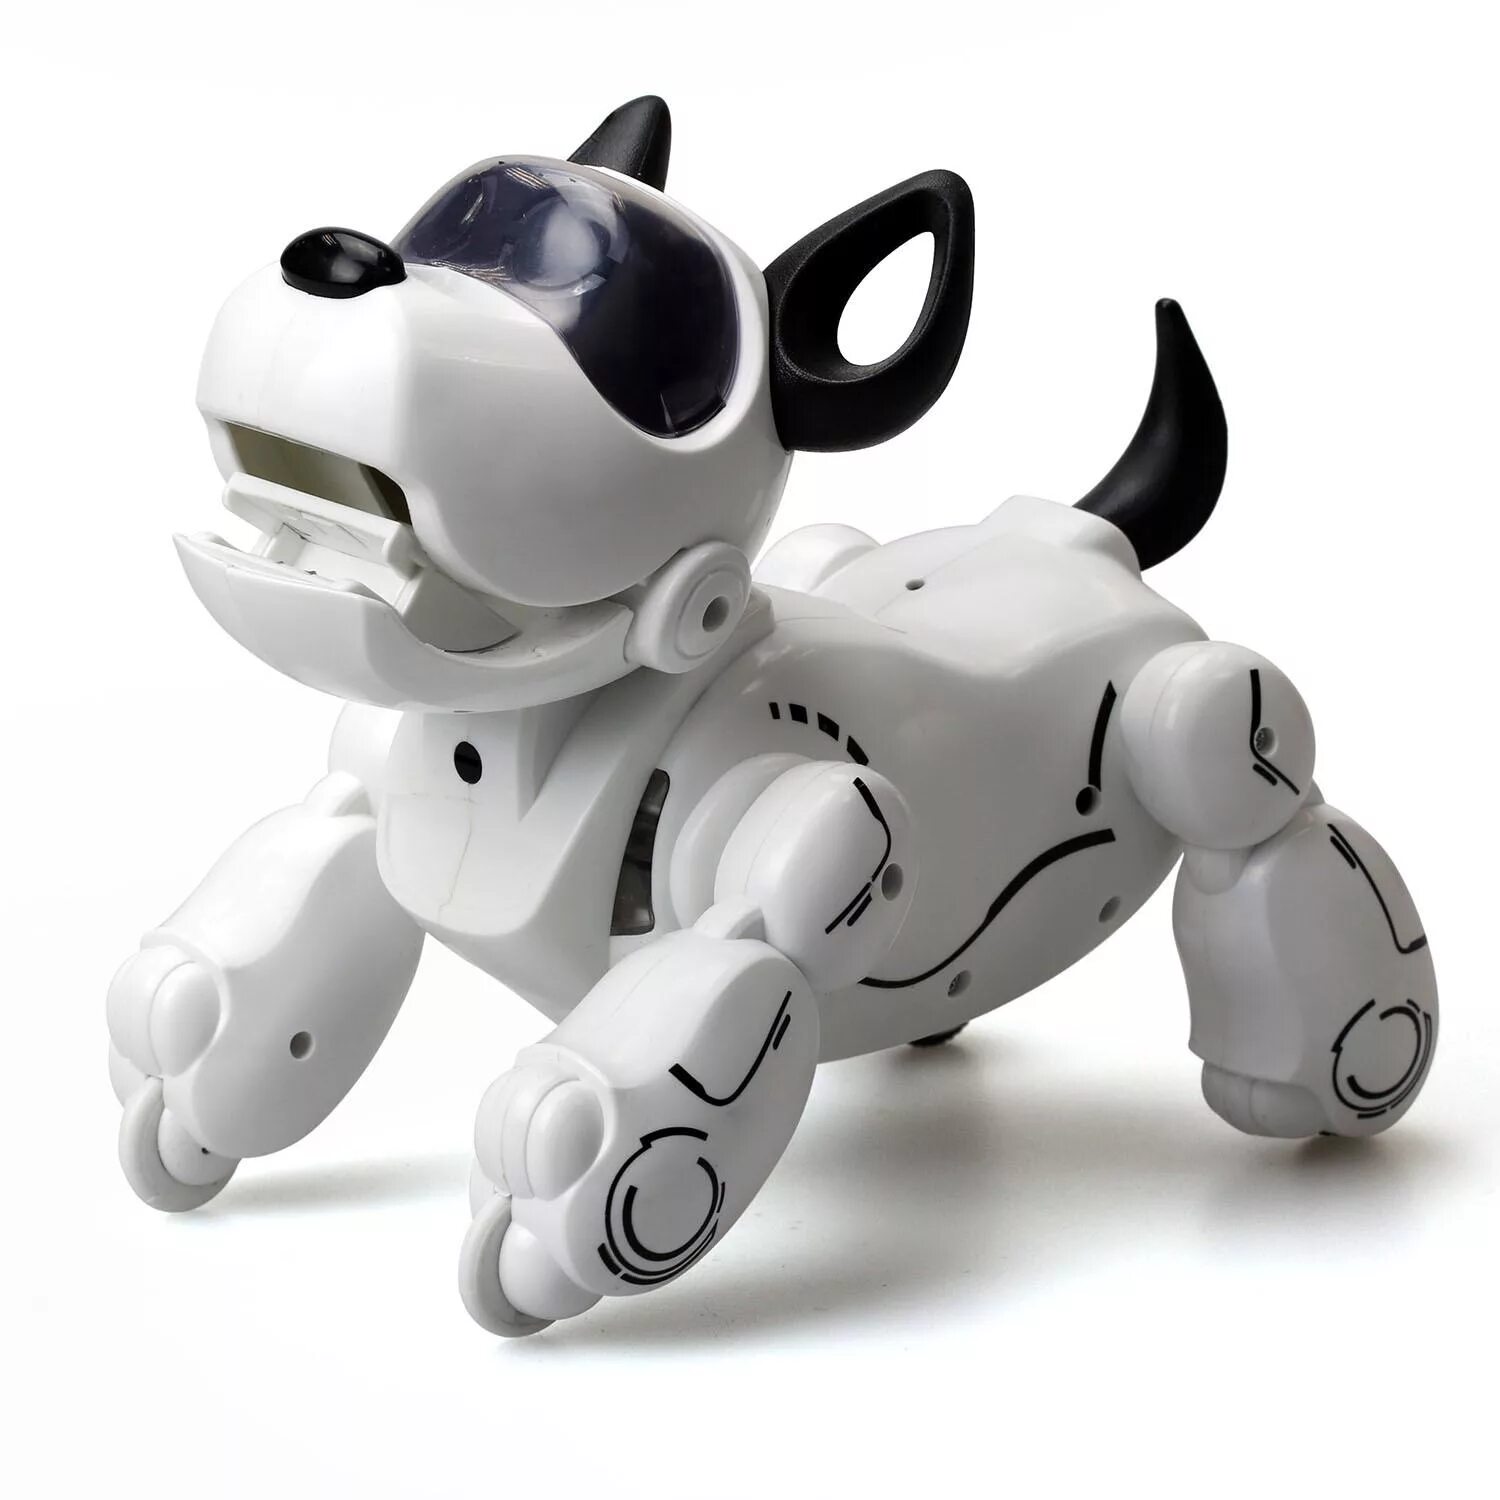 Роботы собаки на открытии игр. Игрушка Silverlit PUPBO собака. Робот Silverlit собака PUPBO. Робот Silverlit собака Дюк. Собака робот Silverlit PUPBO 88520.